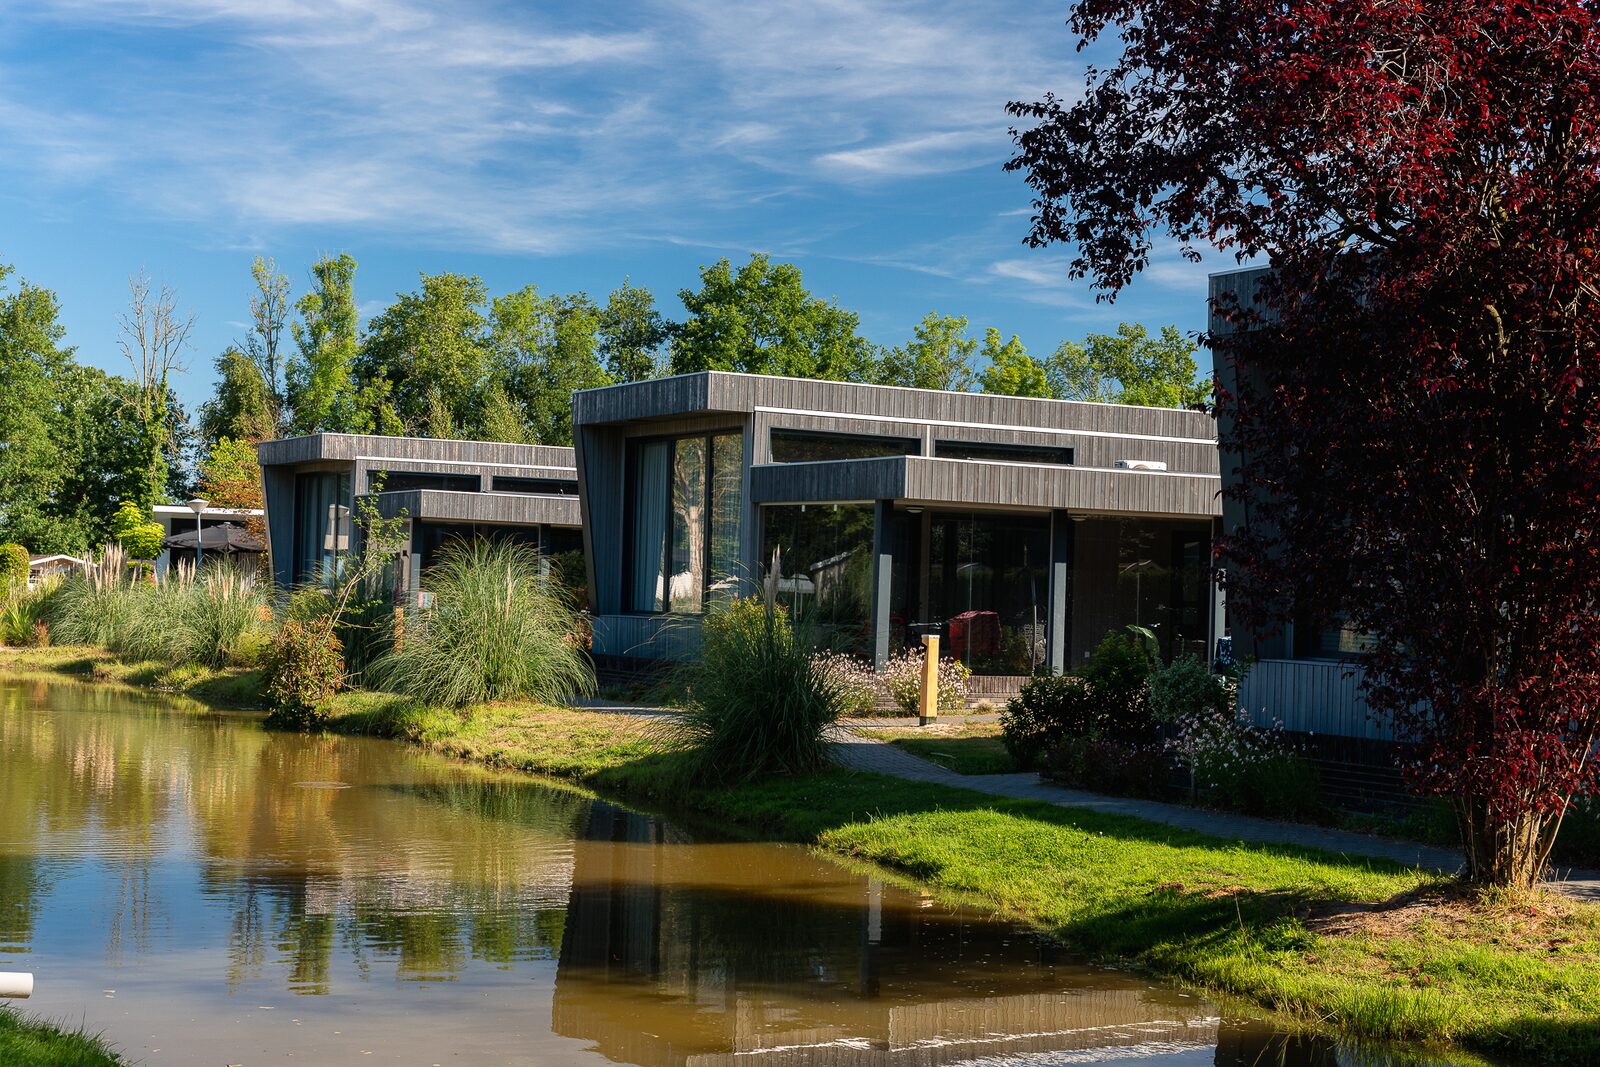 Werfen Sie einen Blick auf unser Naturhaus in Twente